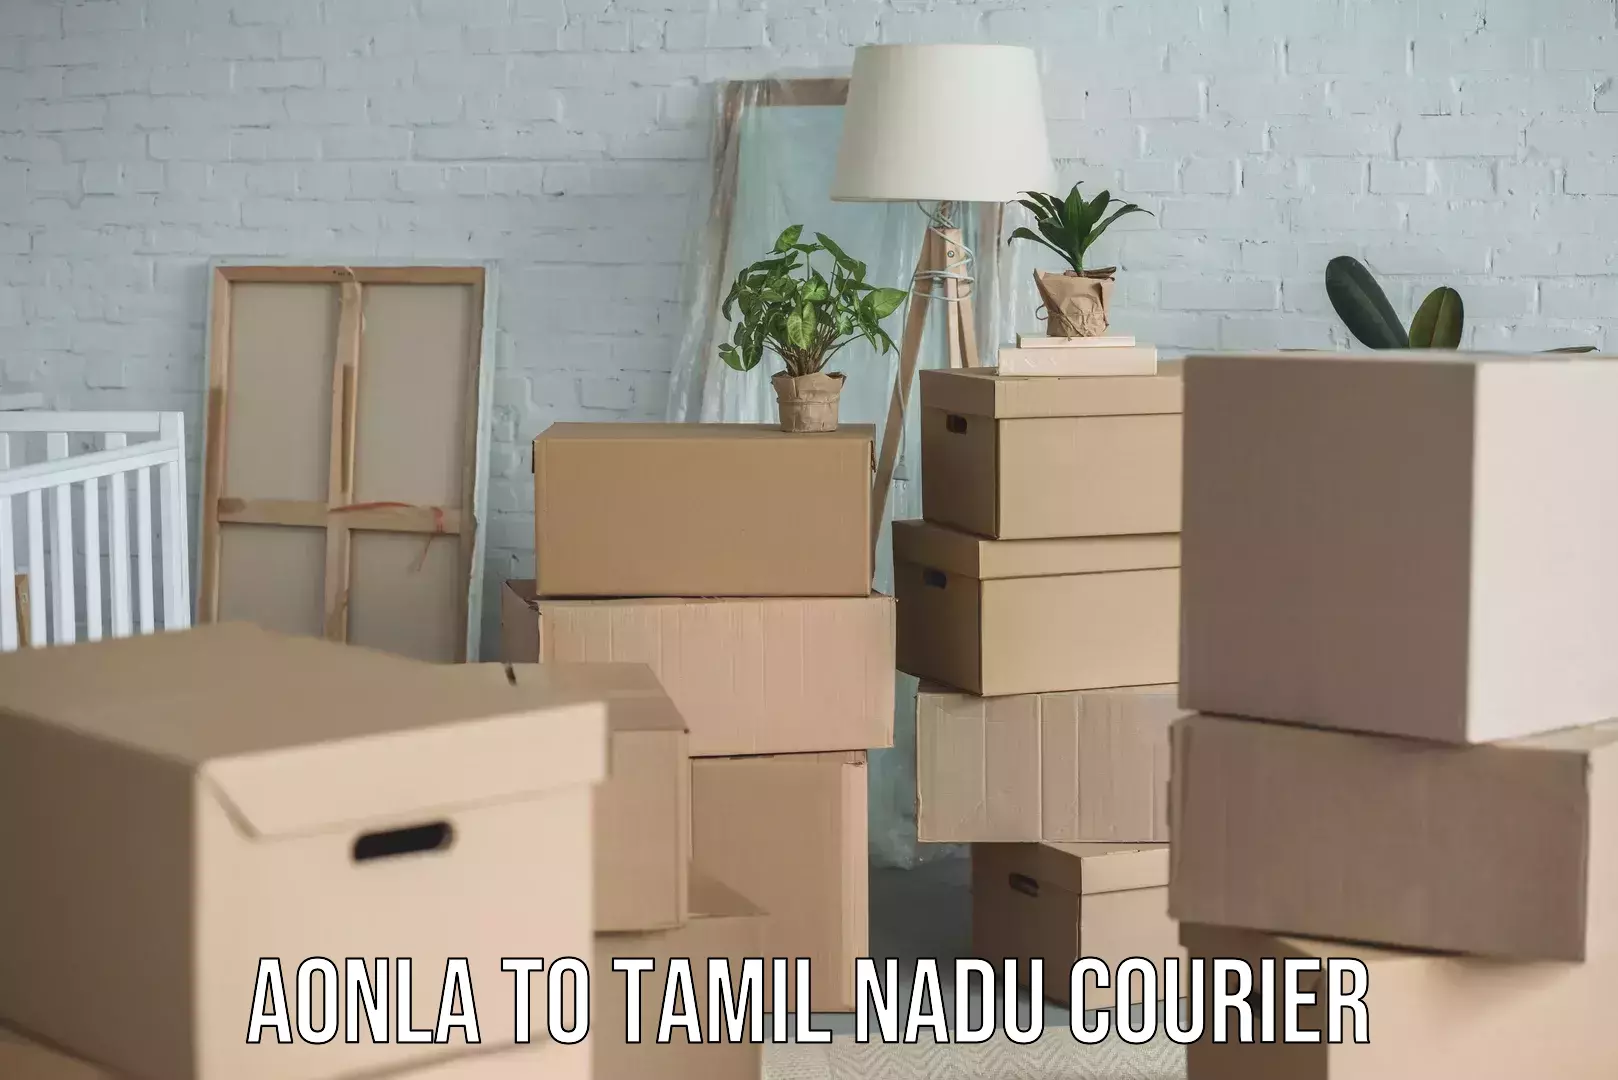 Speedy delivery service Aonla to Tamil Nadu